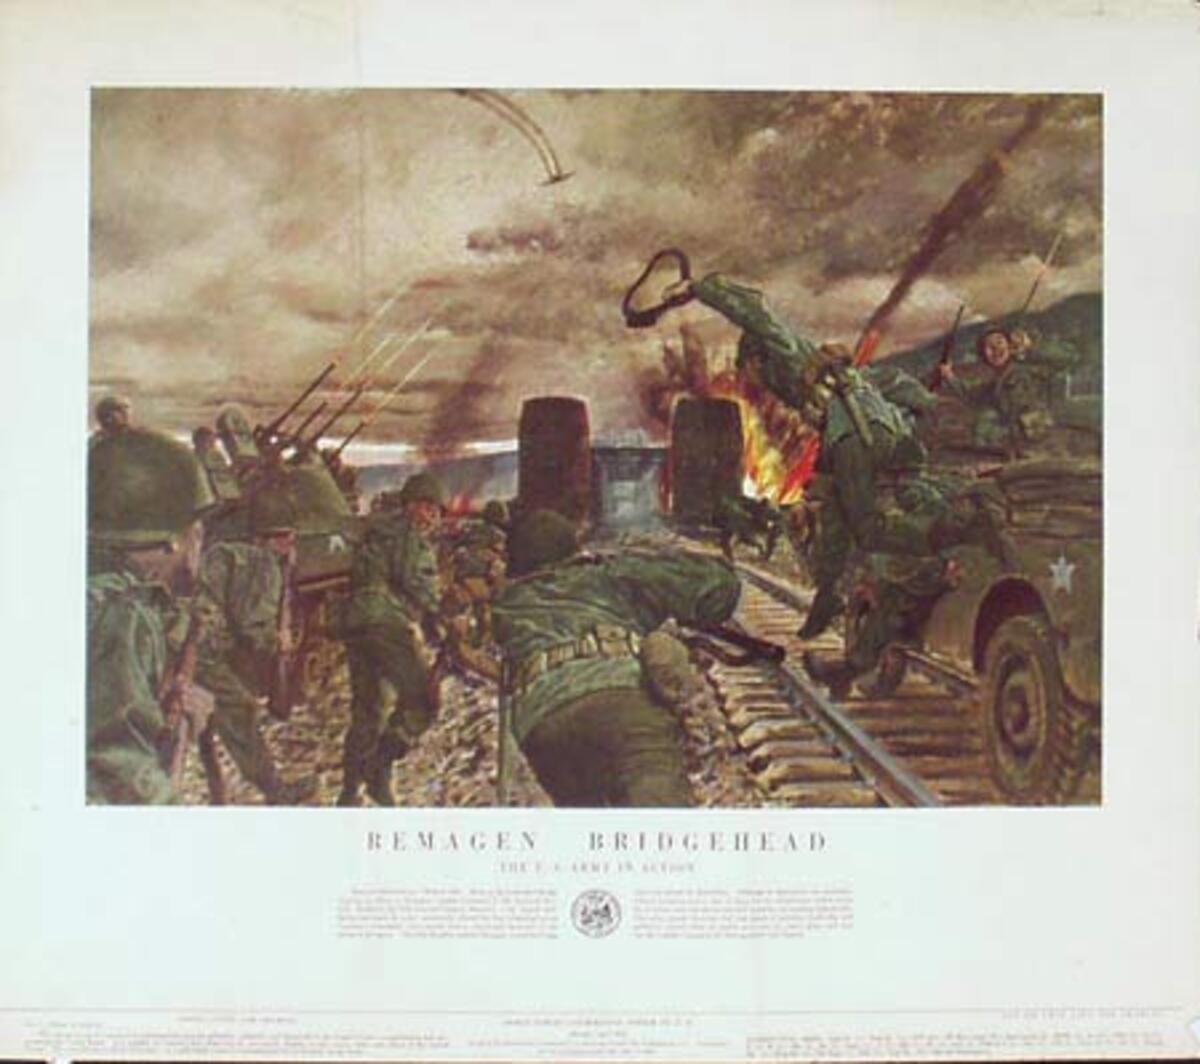 Remagen Bridgehead U.S. Army in Action Original Vintage Army Propaganda Poster